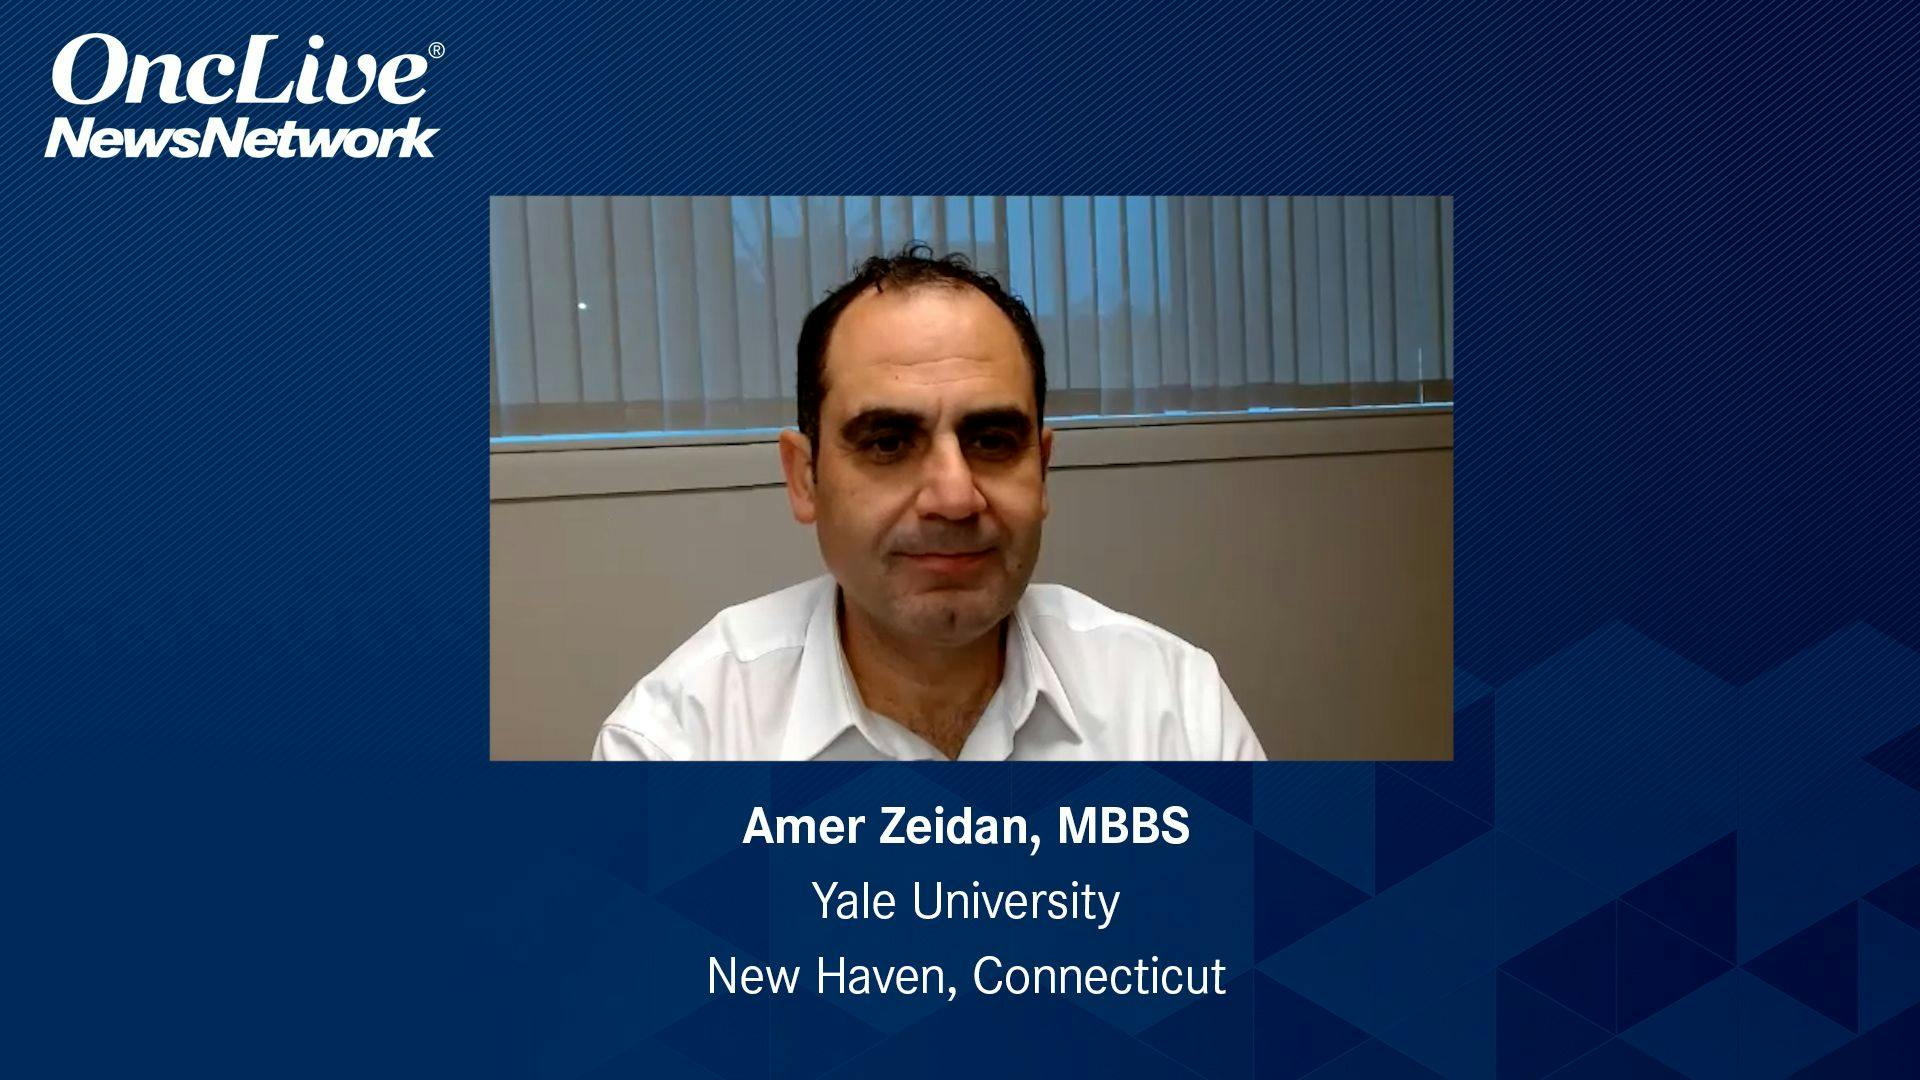 Amer Zeidan, MBBS, an expert on myelodysplastic syndromes and myelofibrosis